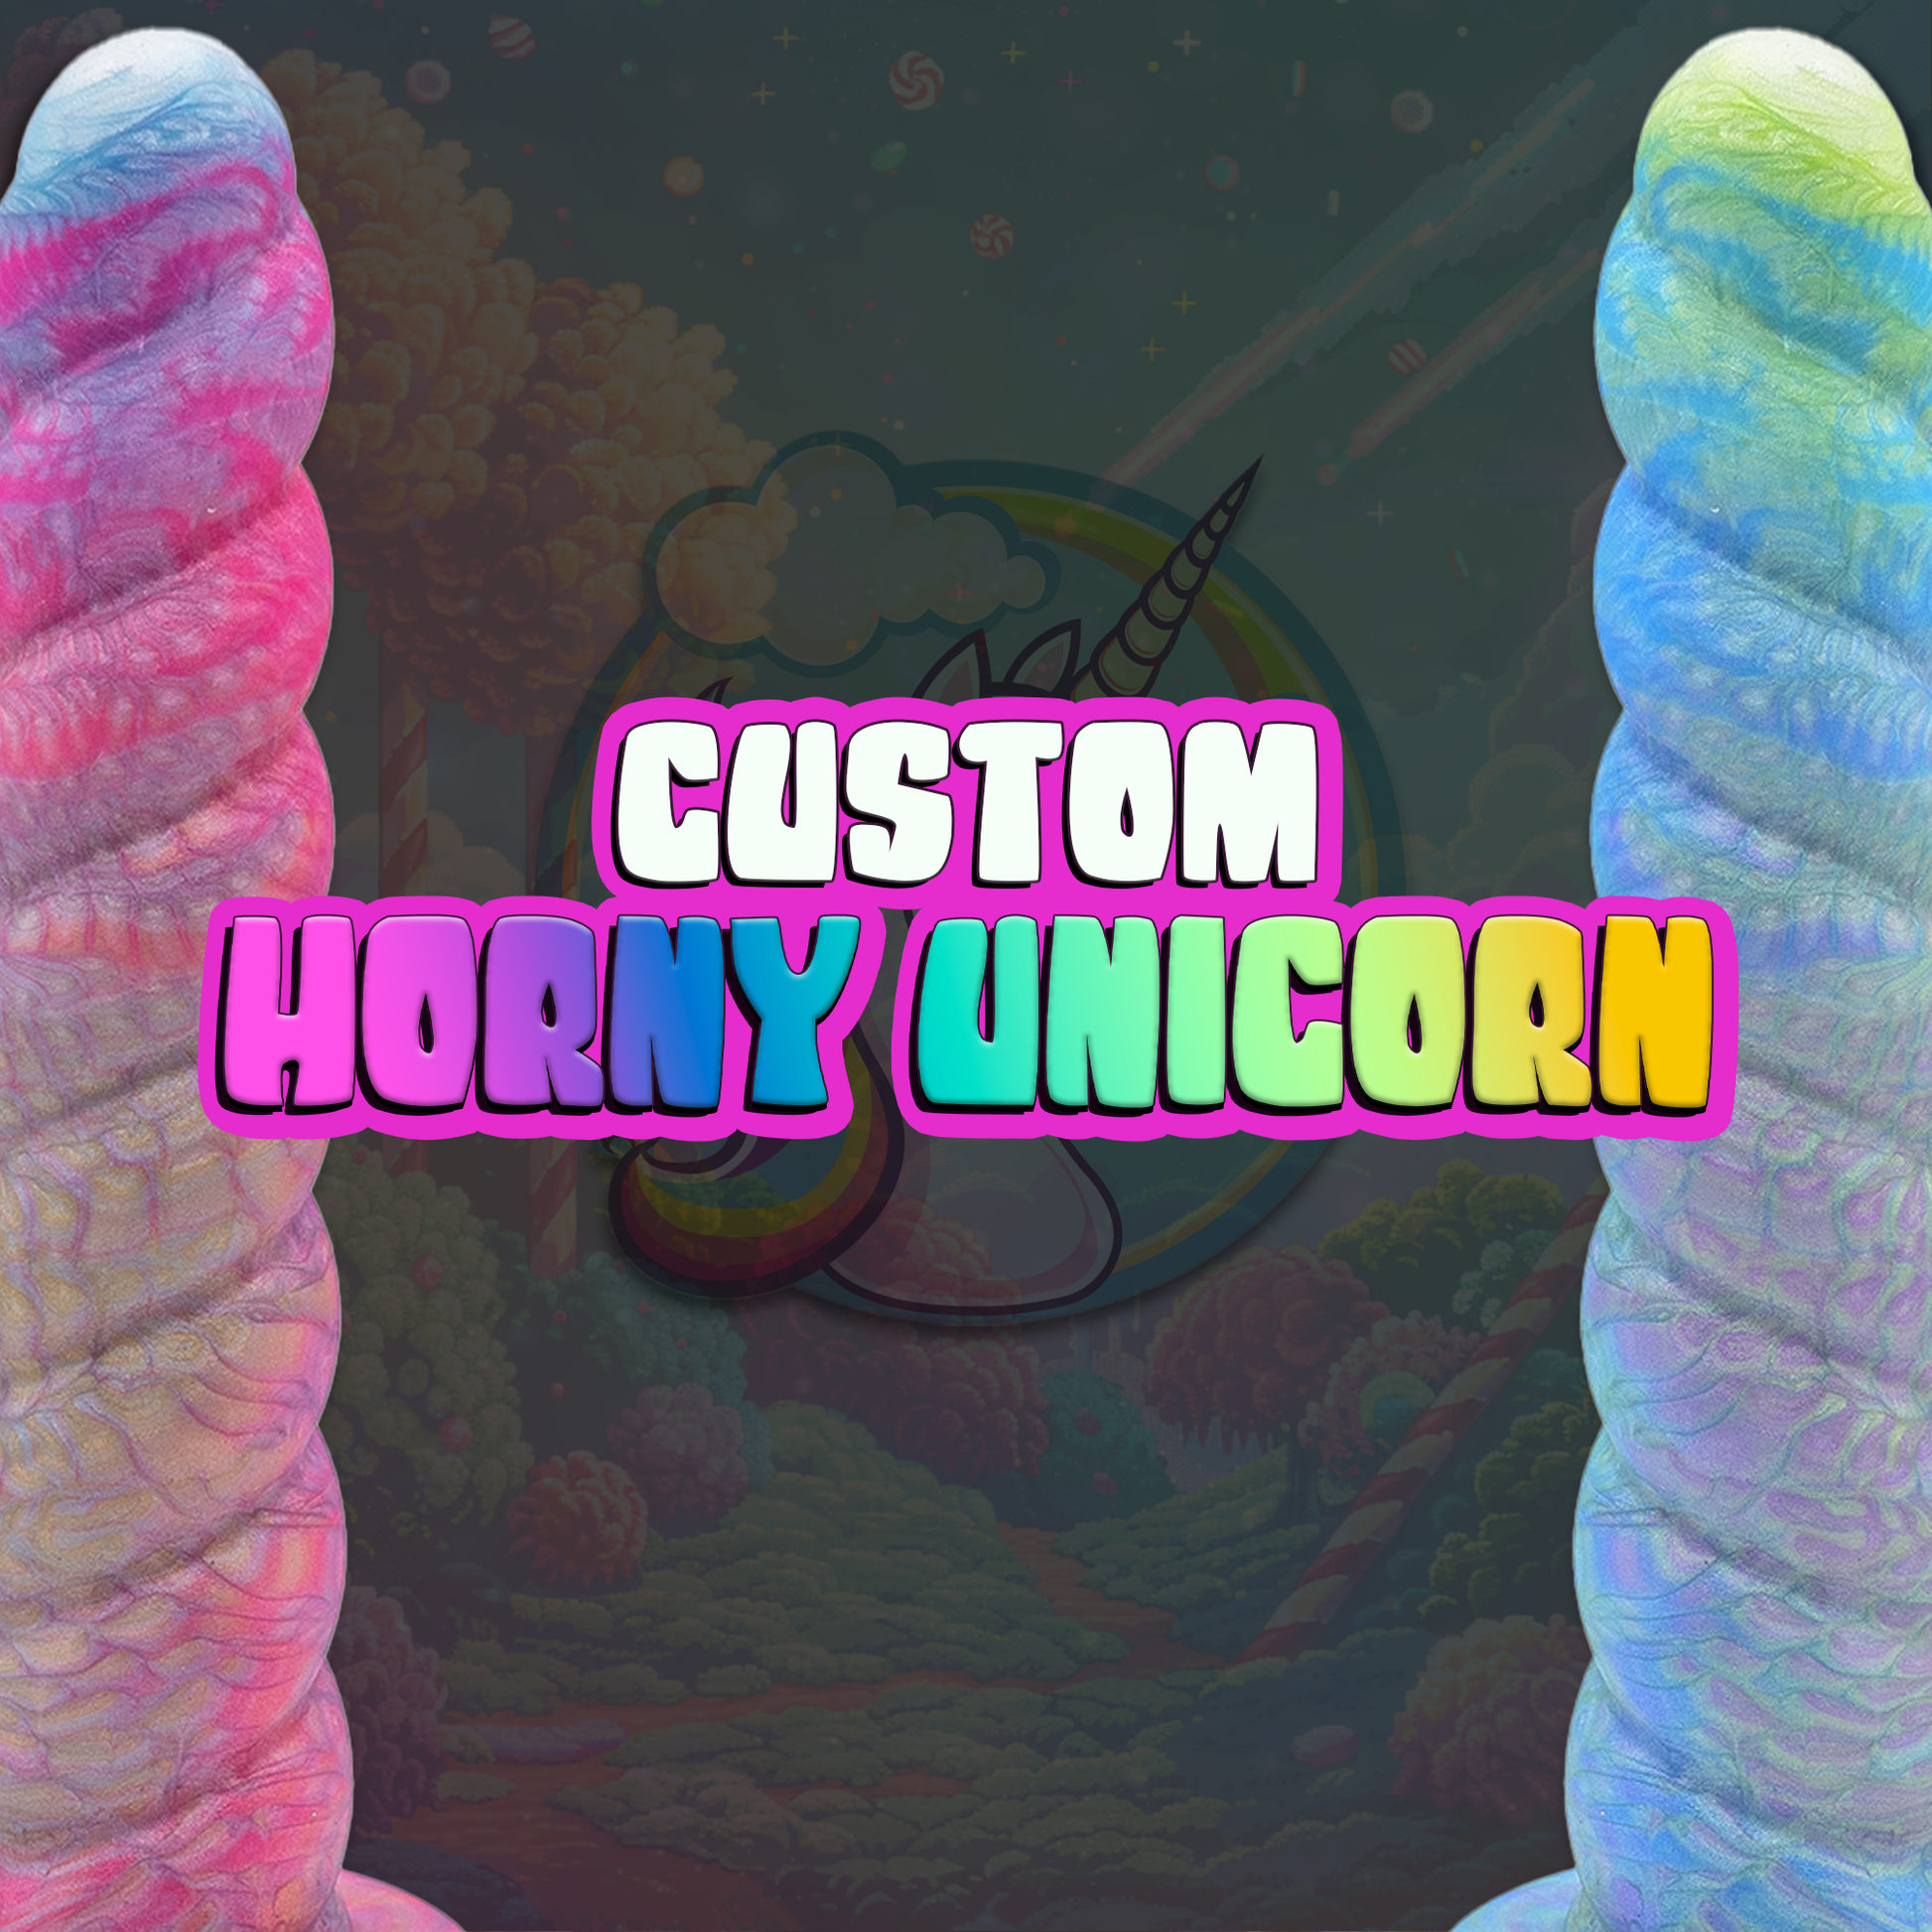 A fantasy-themed dildo. CUSTOM Unicorn horn dildo. Twisted Fantasies.